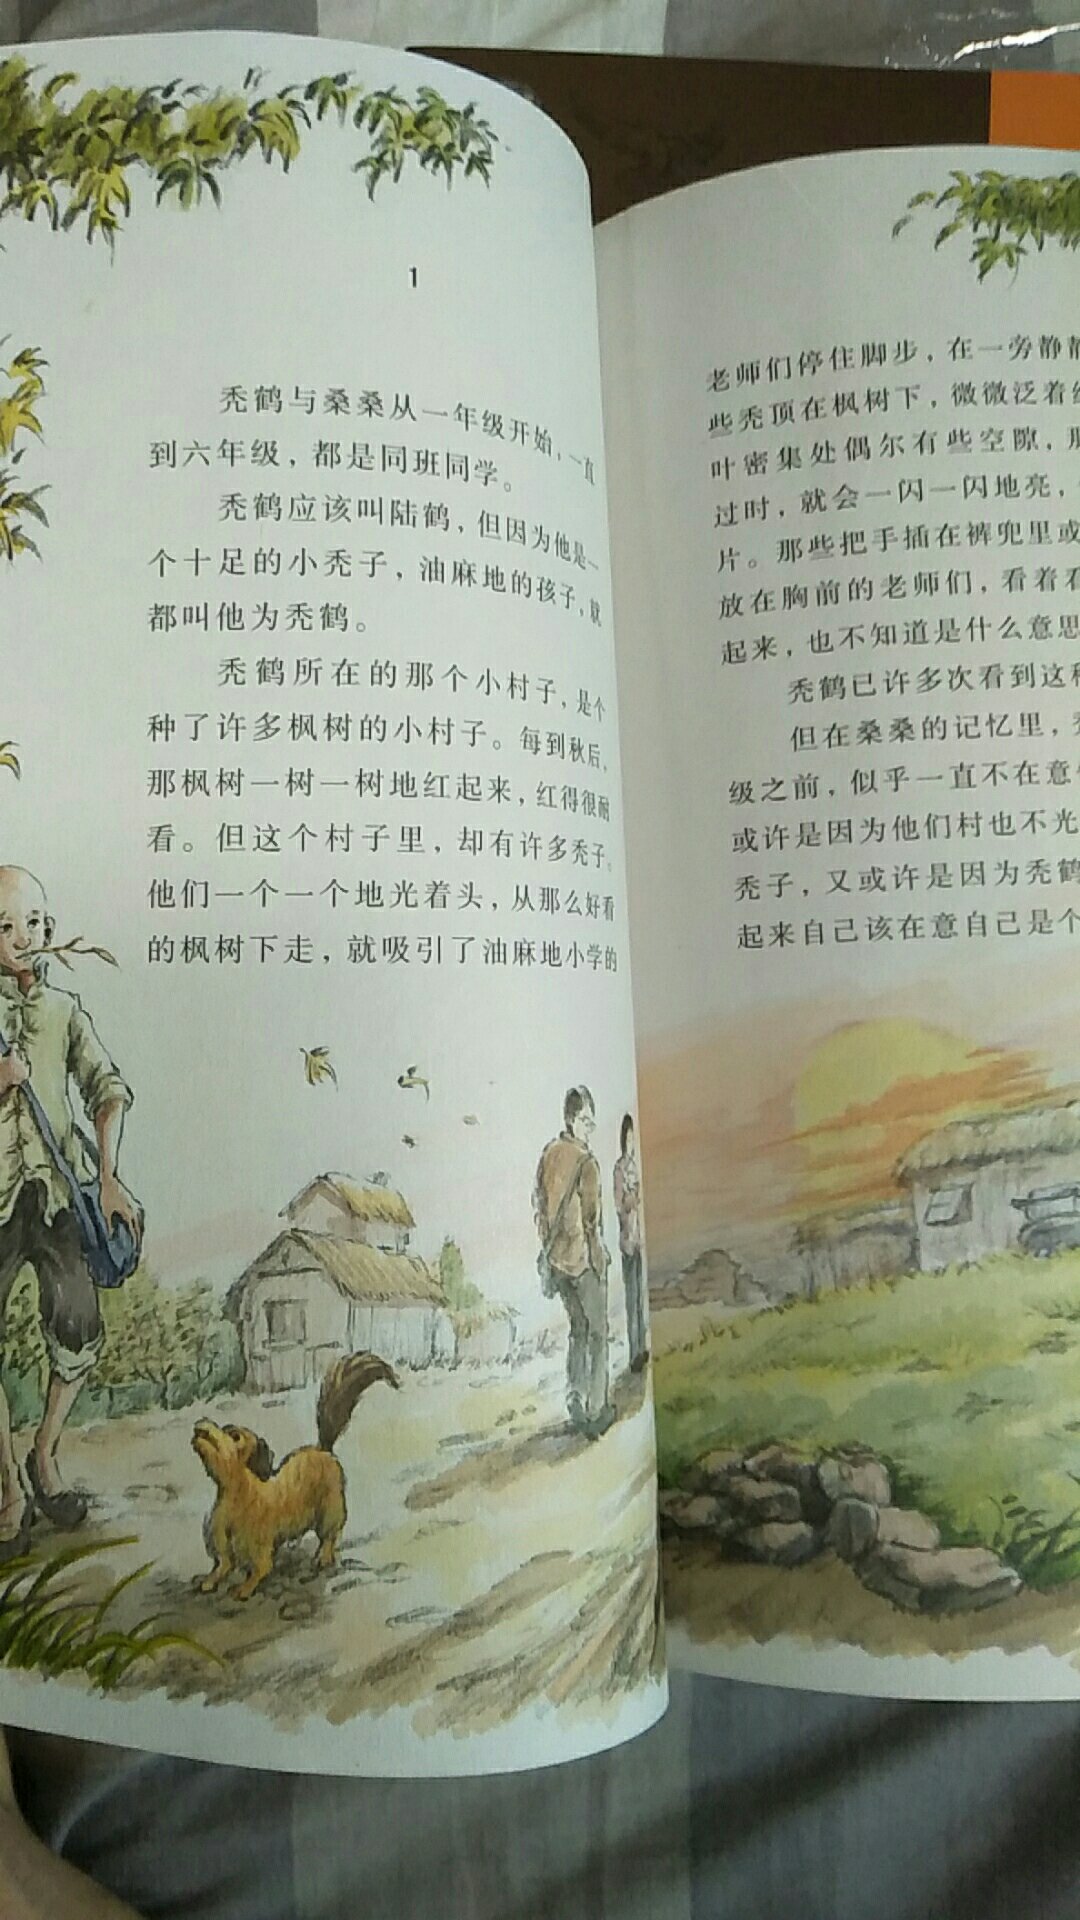 曹文轩作品草房子的画本，用券下来比实体店便宜不少，彩色插图，对小孩很有吸引力。